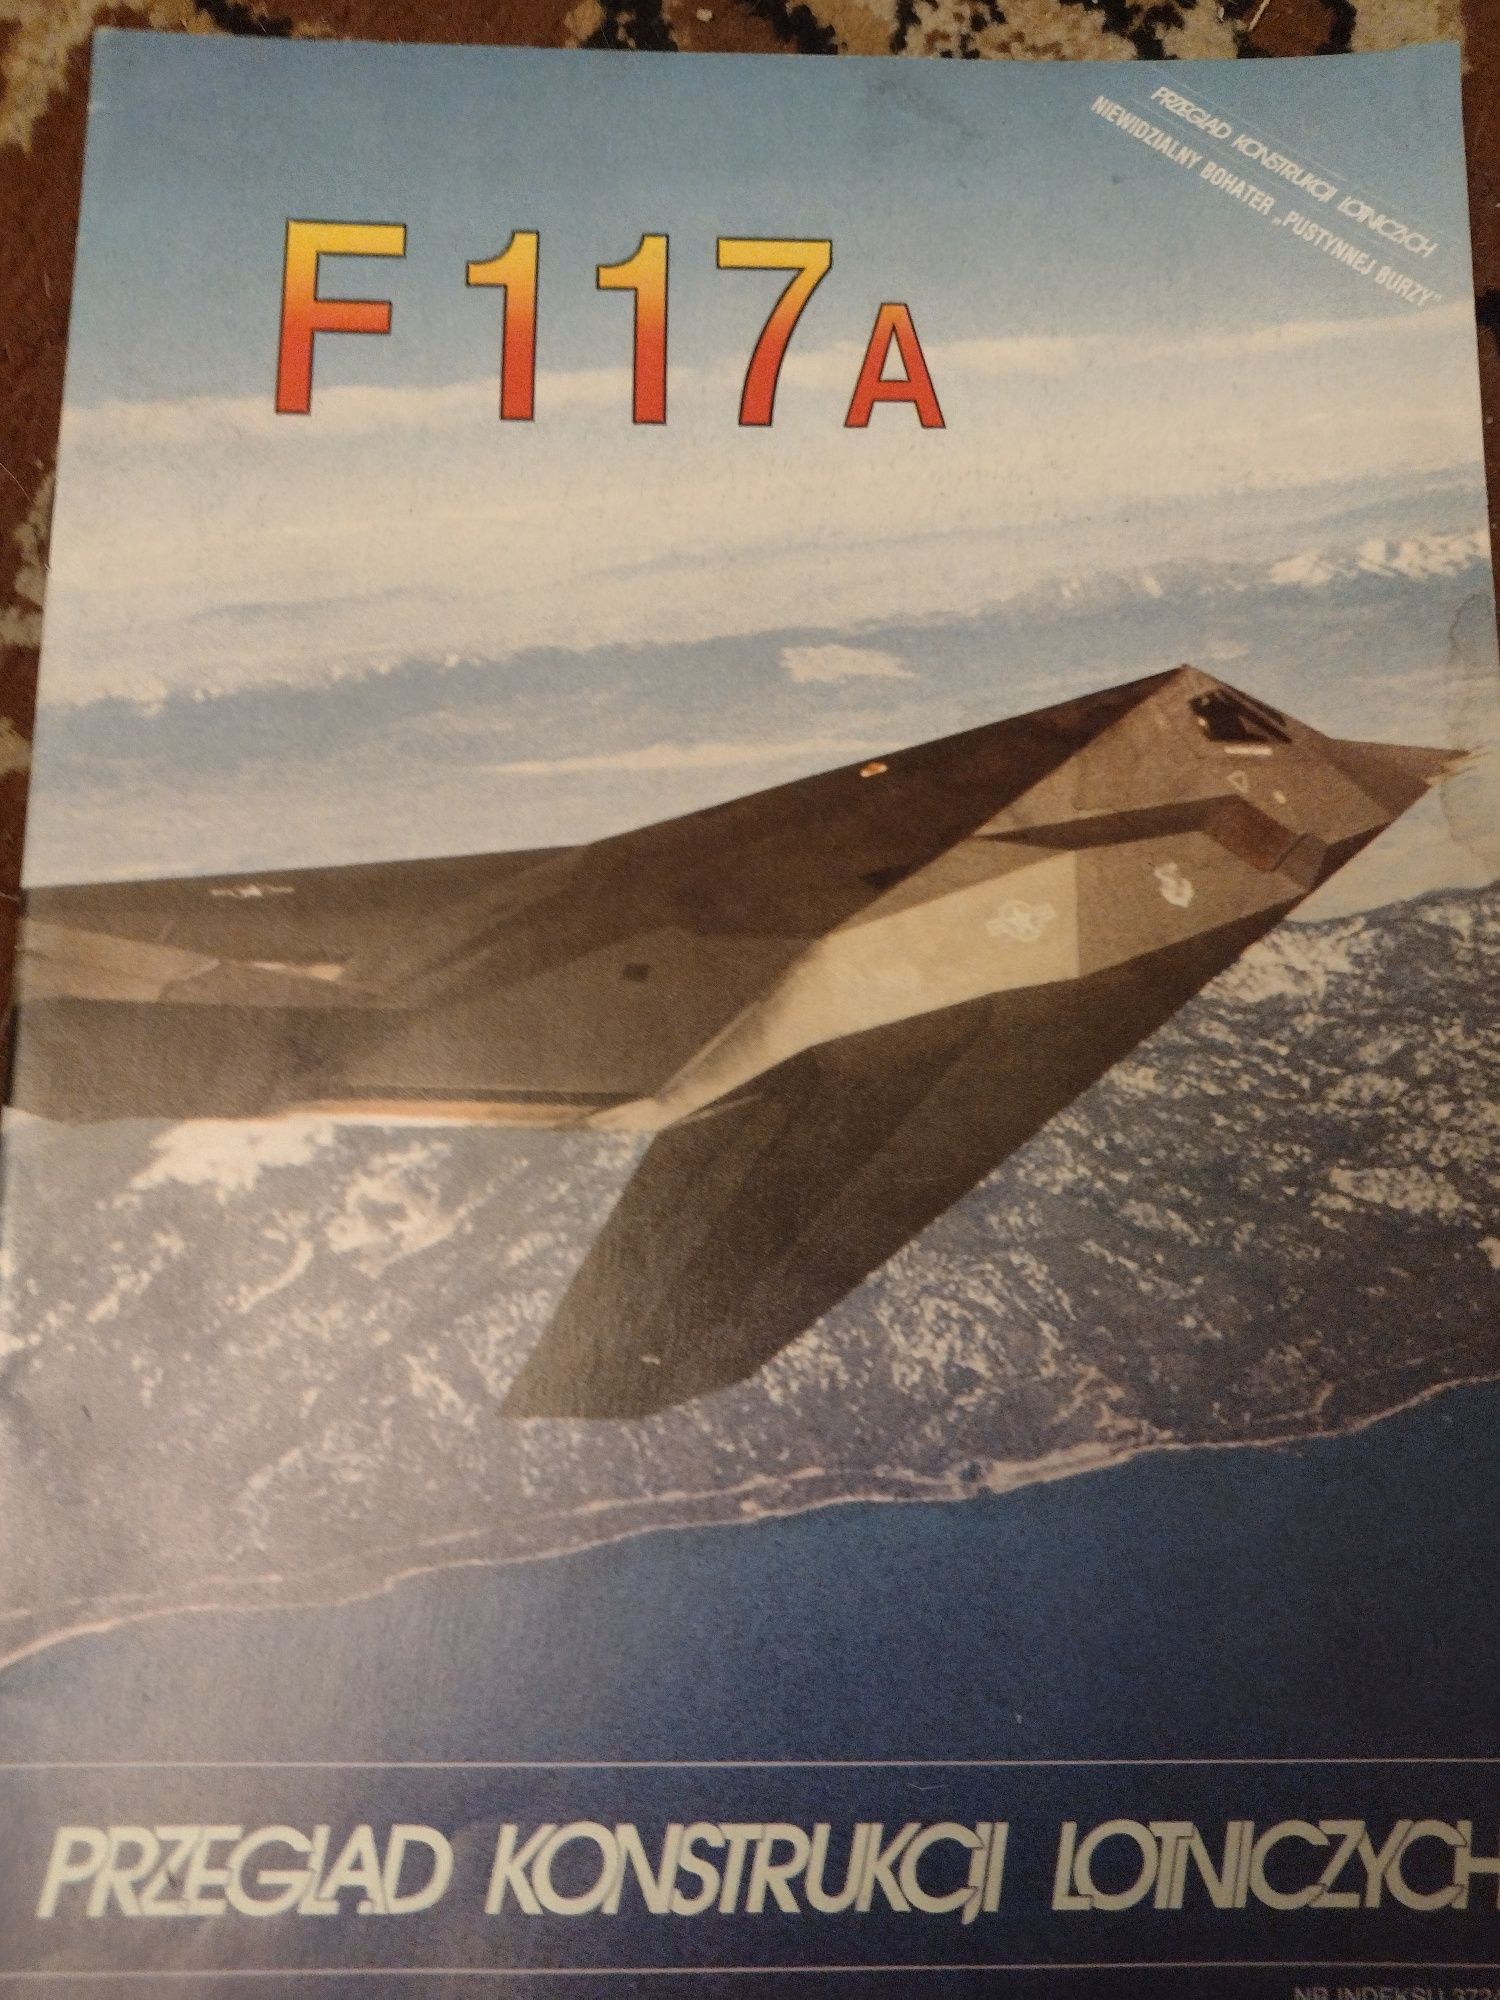 Przegląd konstrukcji lotniczych F117A